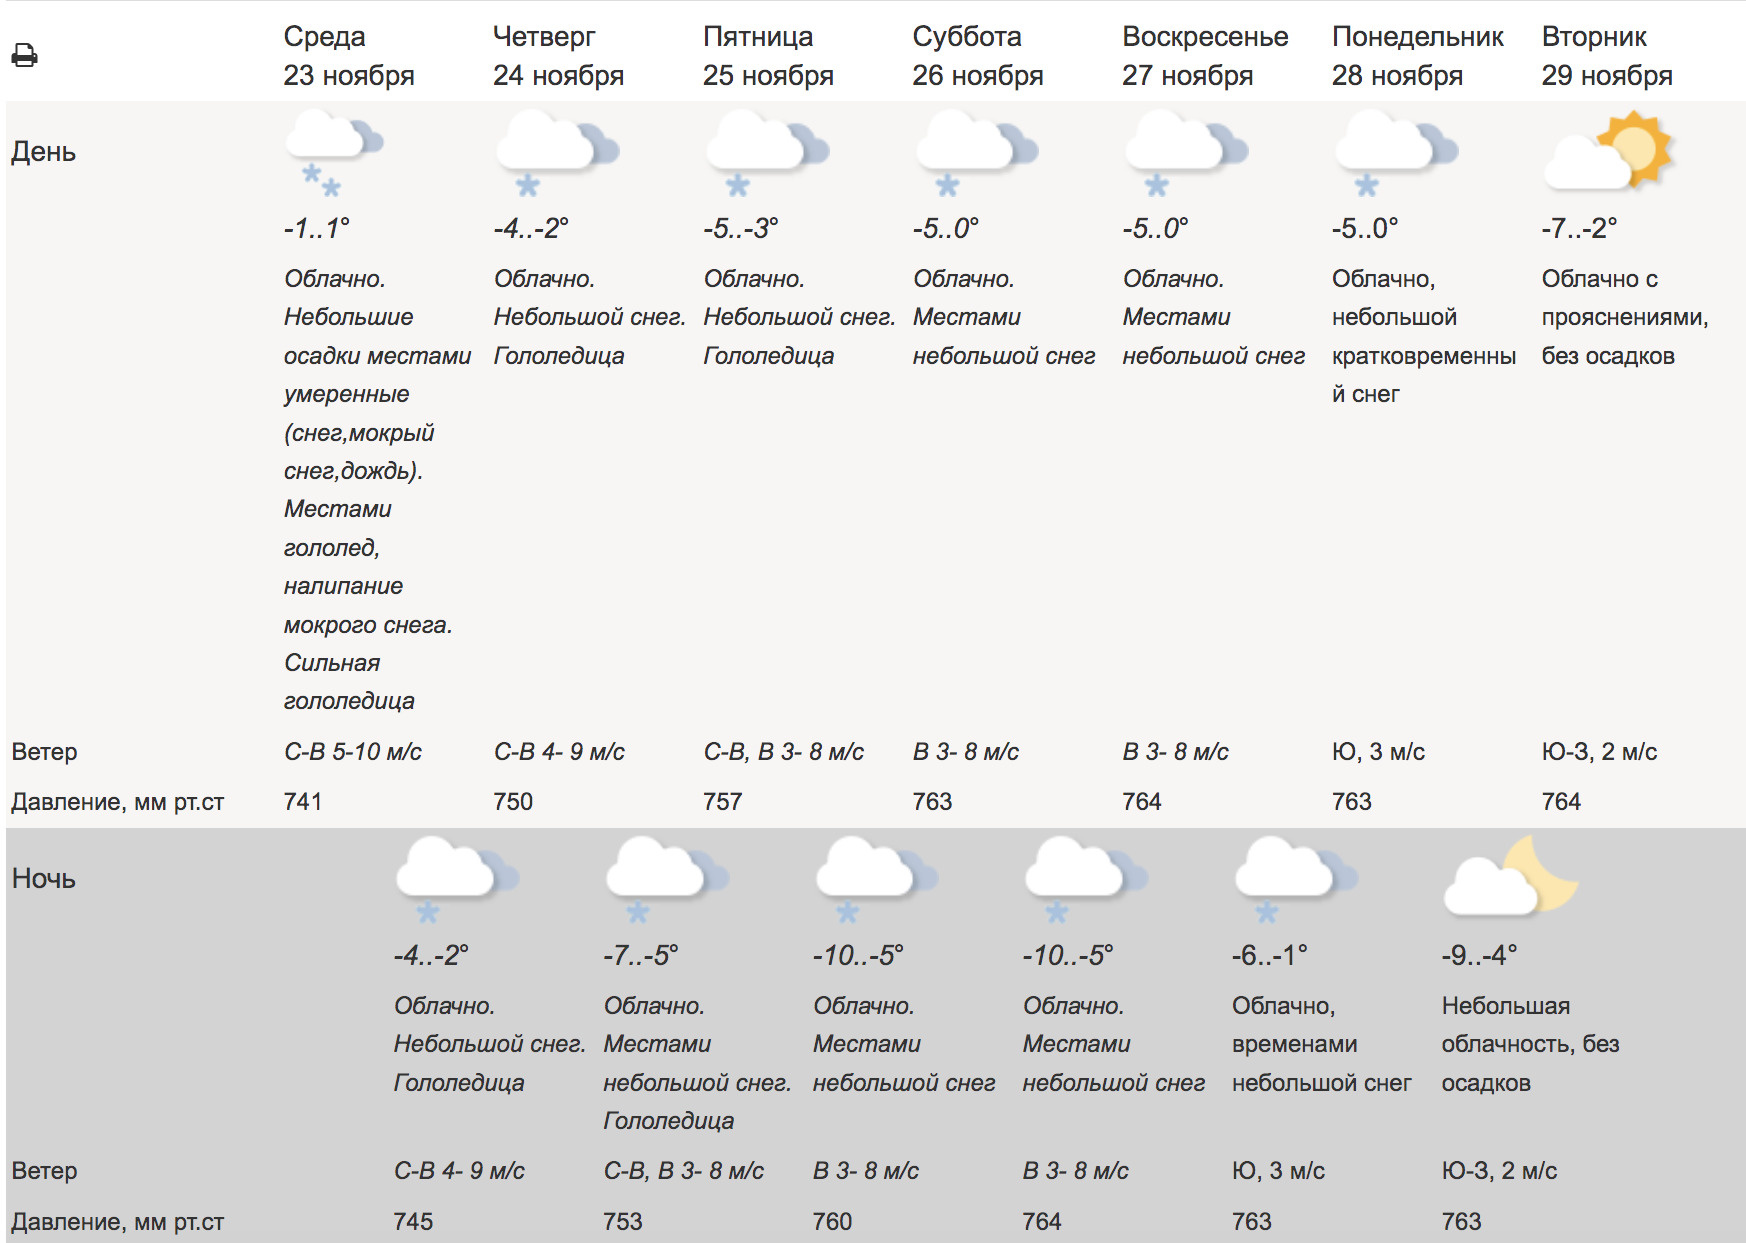 Прогноз погоды в подмосковье на 10 дней